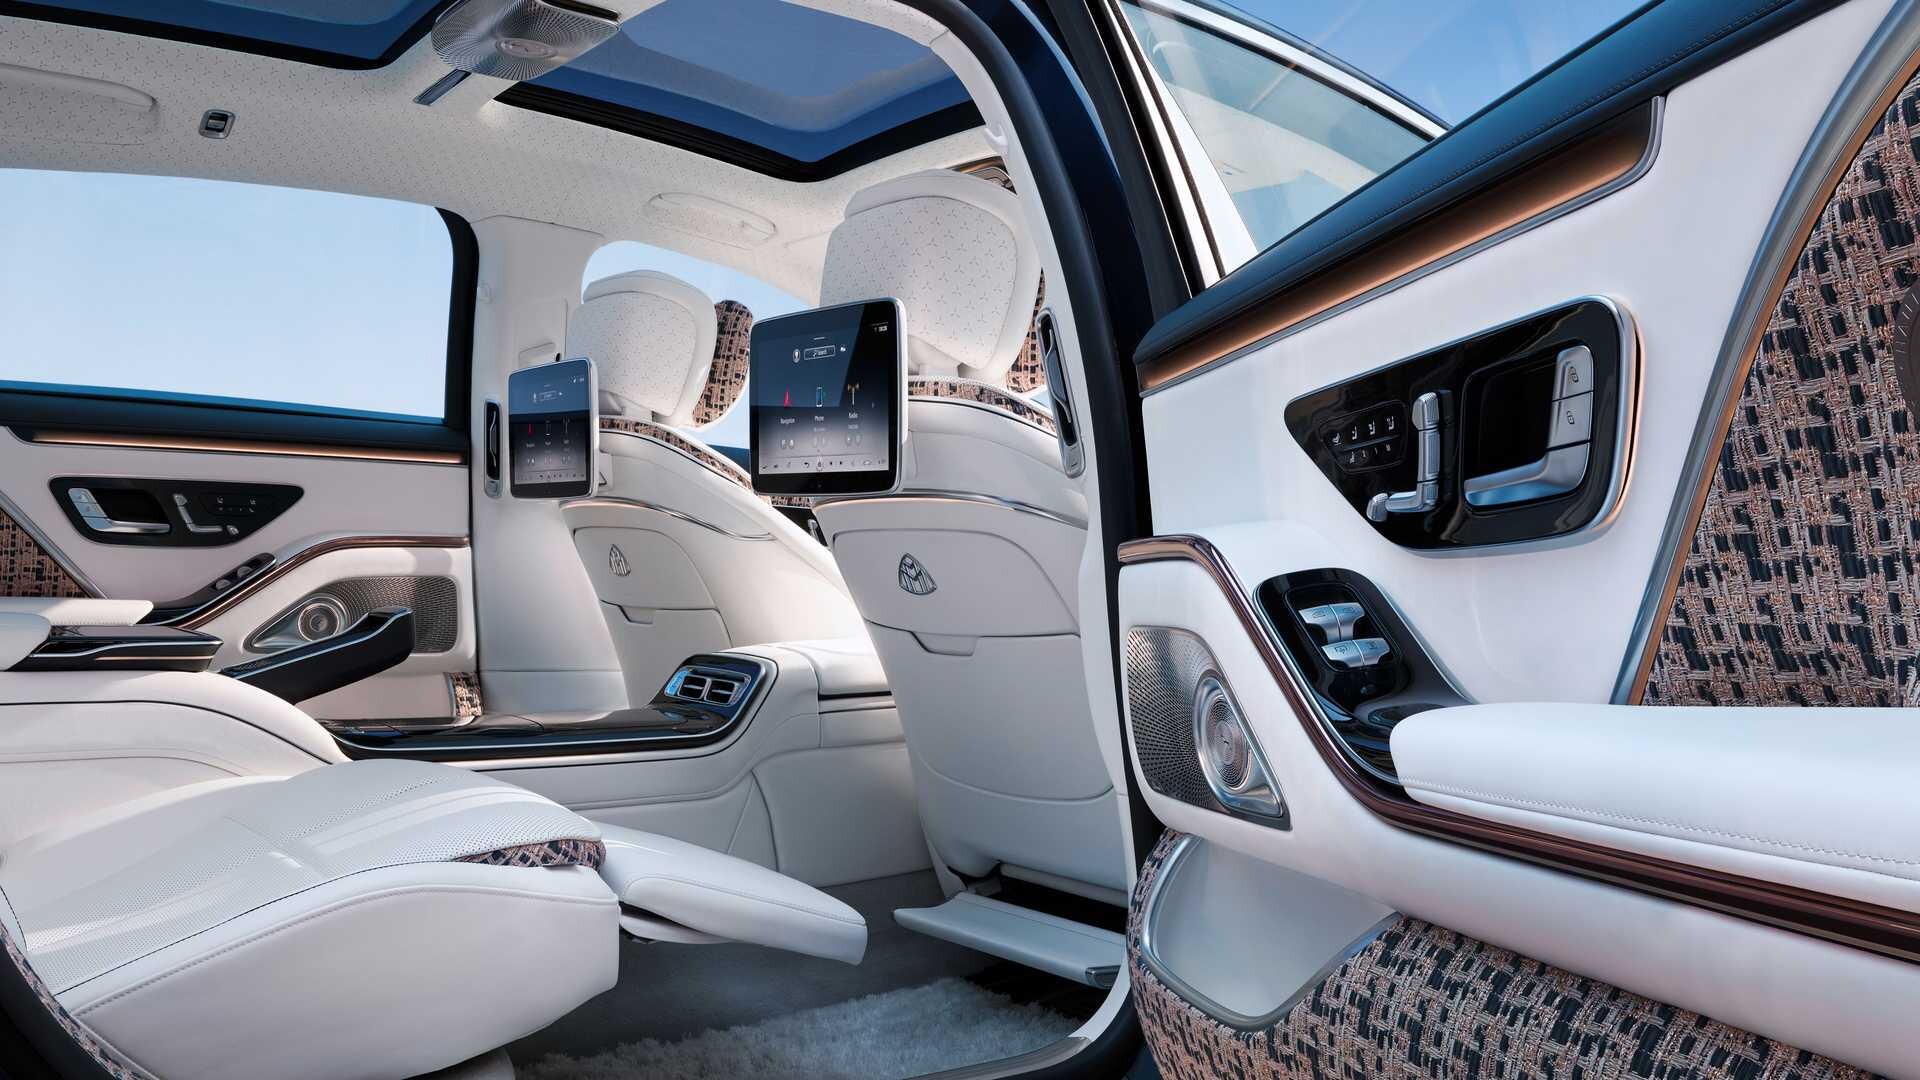 https://citymagazine.si/fr/mercedes-maybach-s-haute-voiture-prestige-limousine-pour-les-gourmets-a-la-mode/mercedes-maybach-s-class-haute-voiture-5/